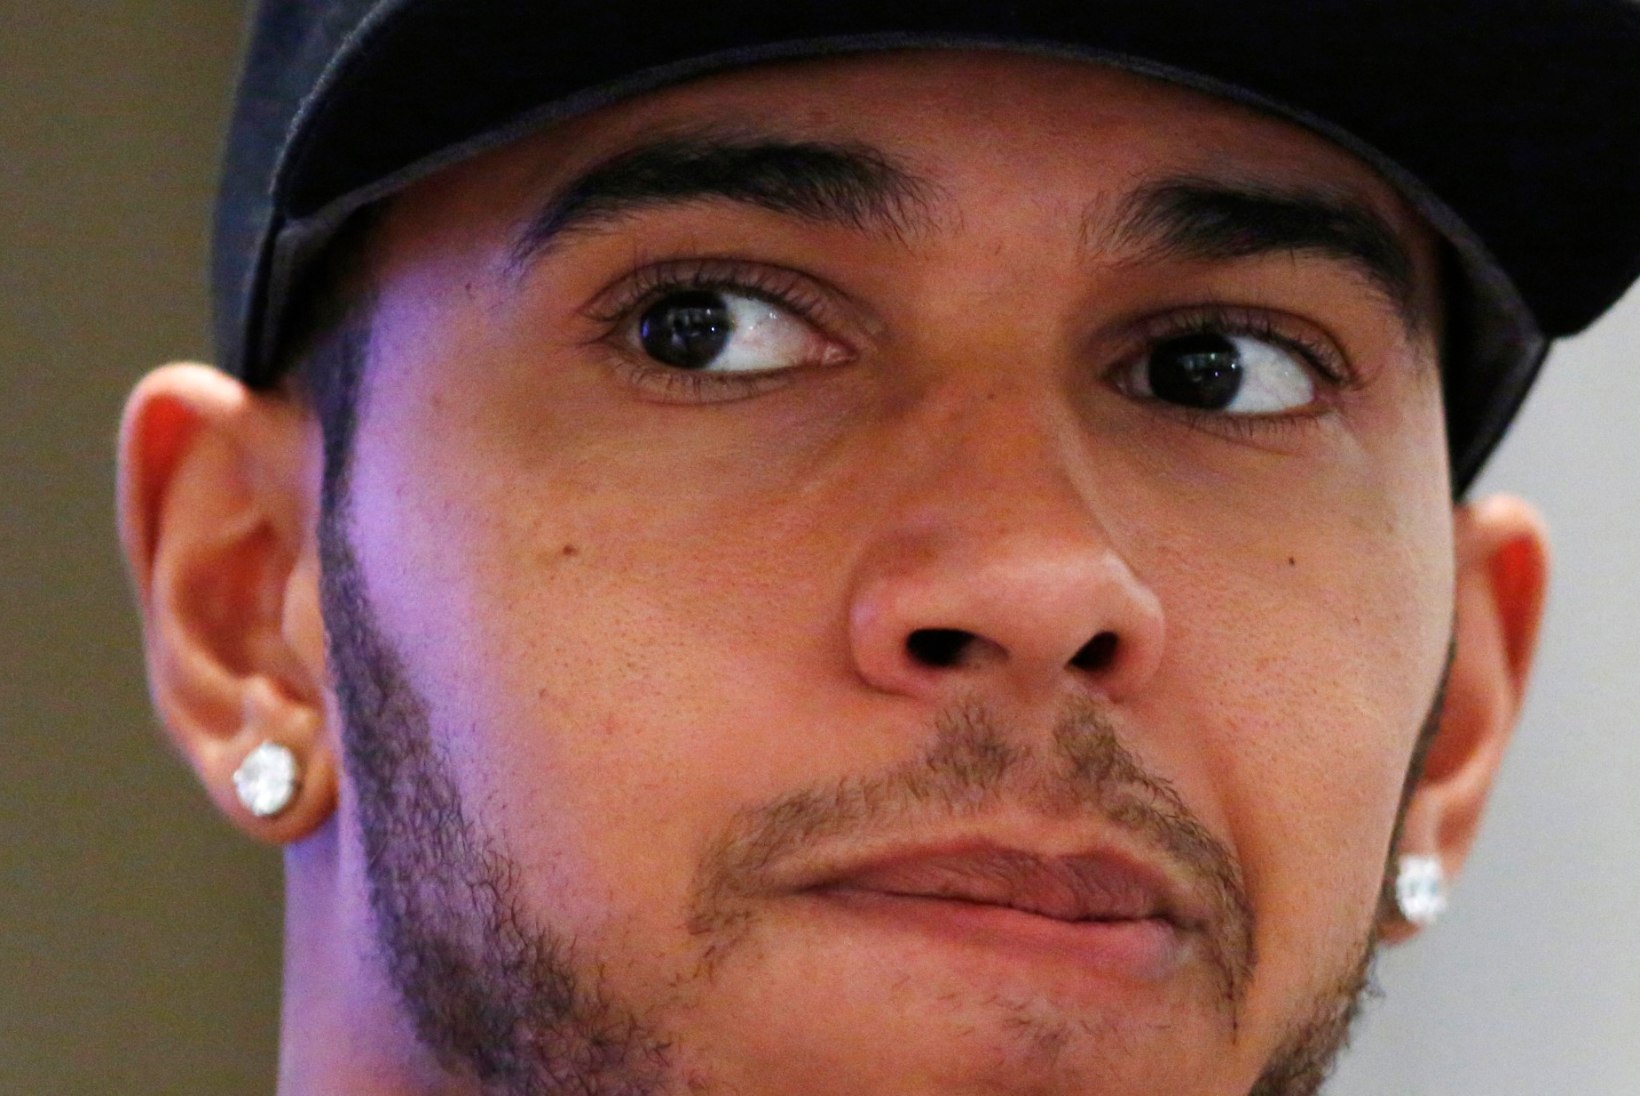 VAATA AGA! Lewis Hamilton kaalub tõsiselt muusikukarjääri